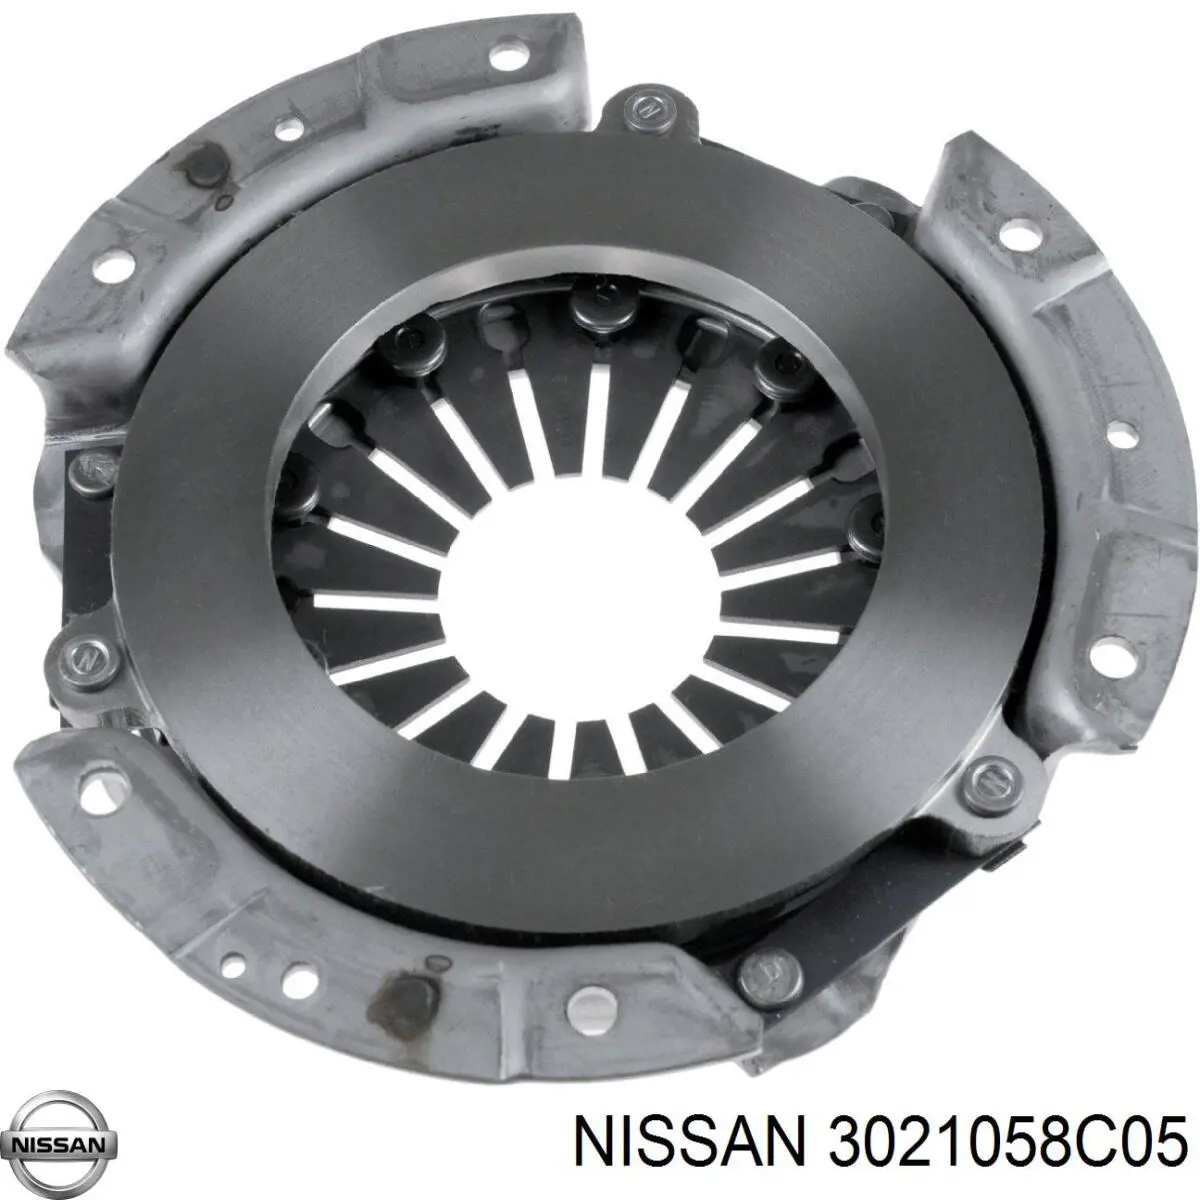 Plato de presión del embrague para Nissan Sunny (B11)